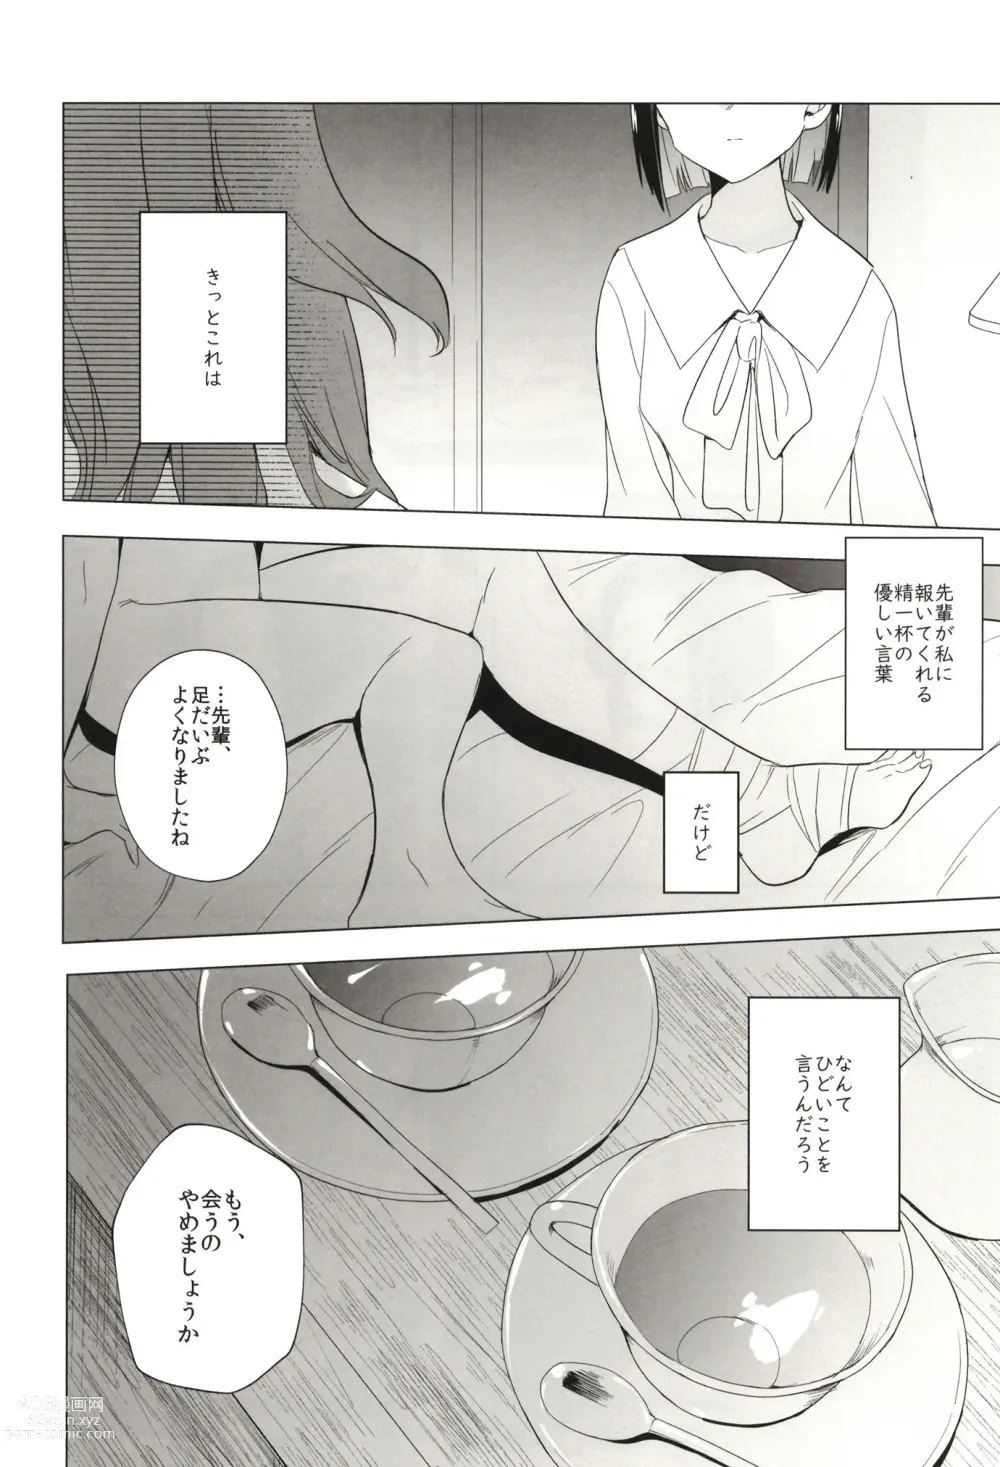 Page 36 of doujinshi Seireki 5000-nen no bouji